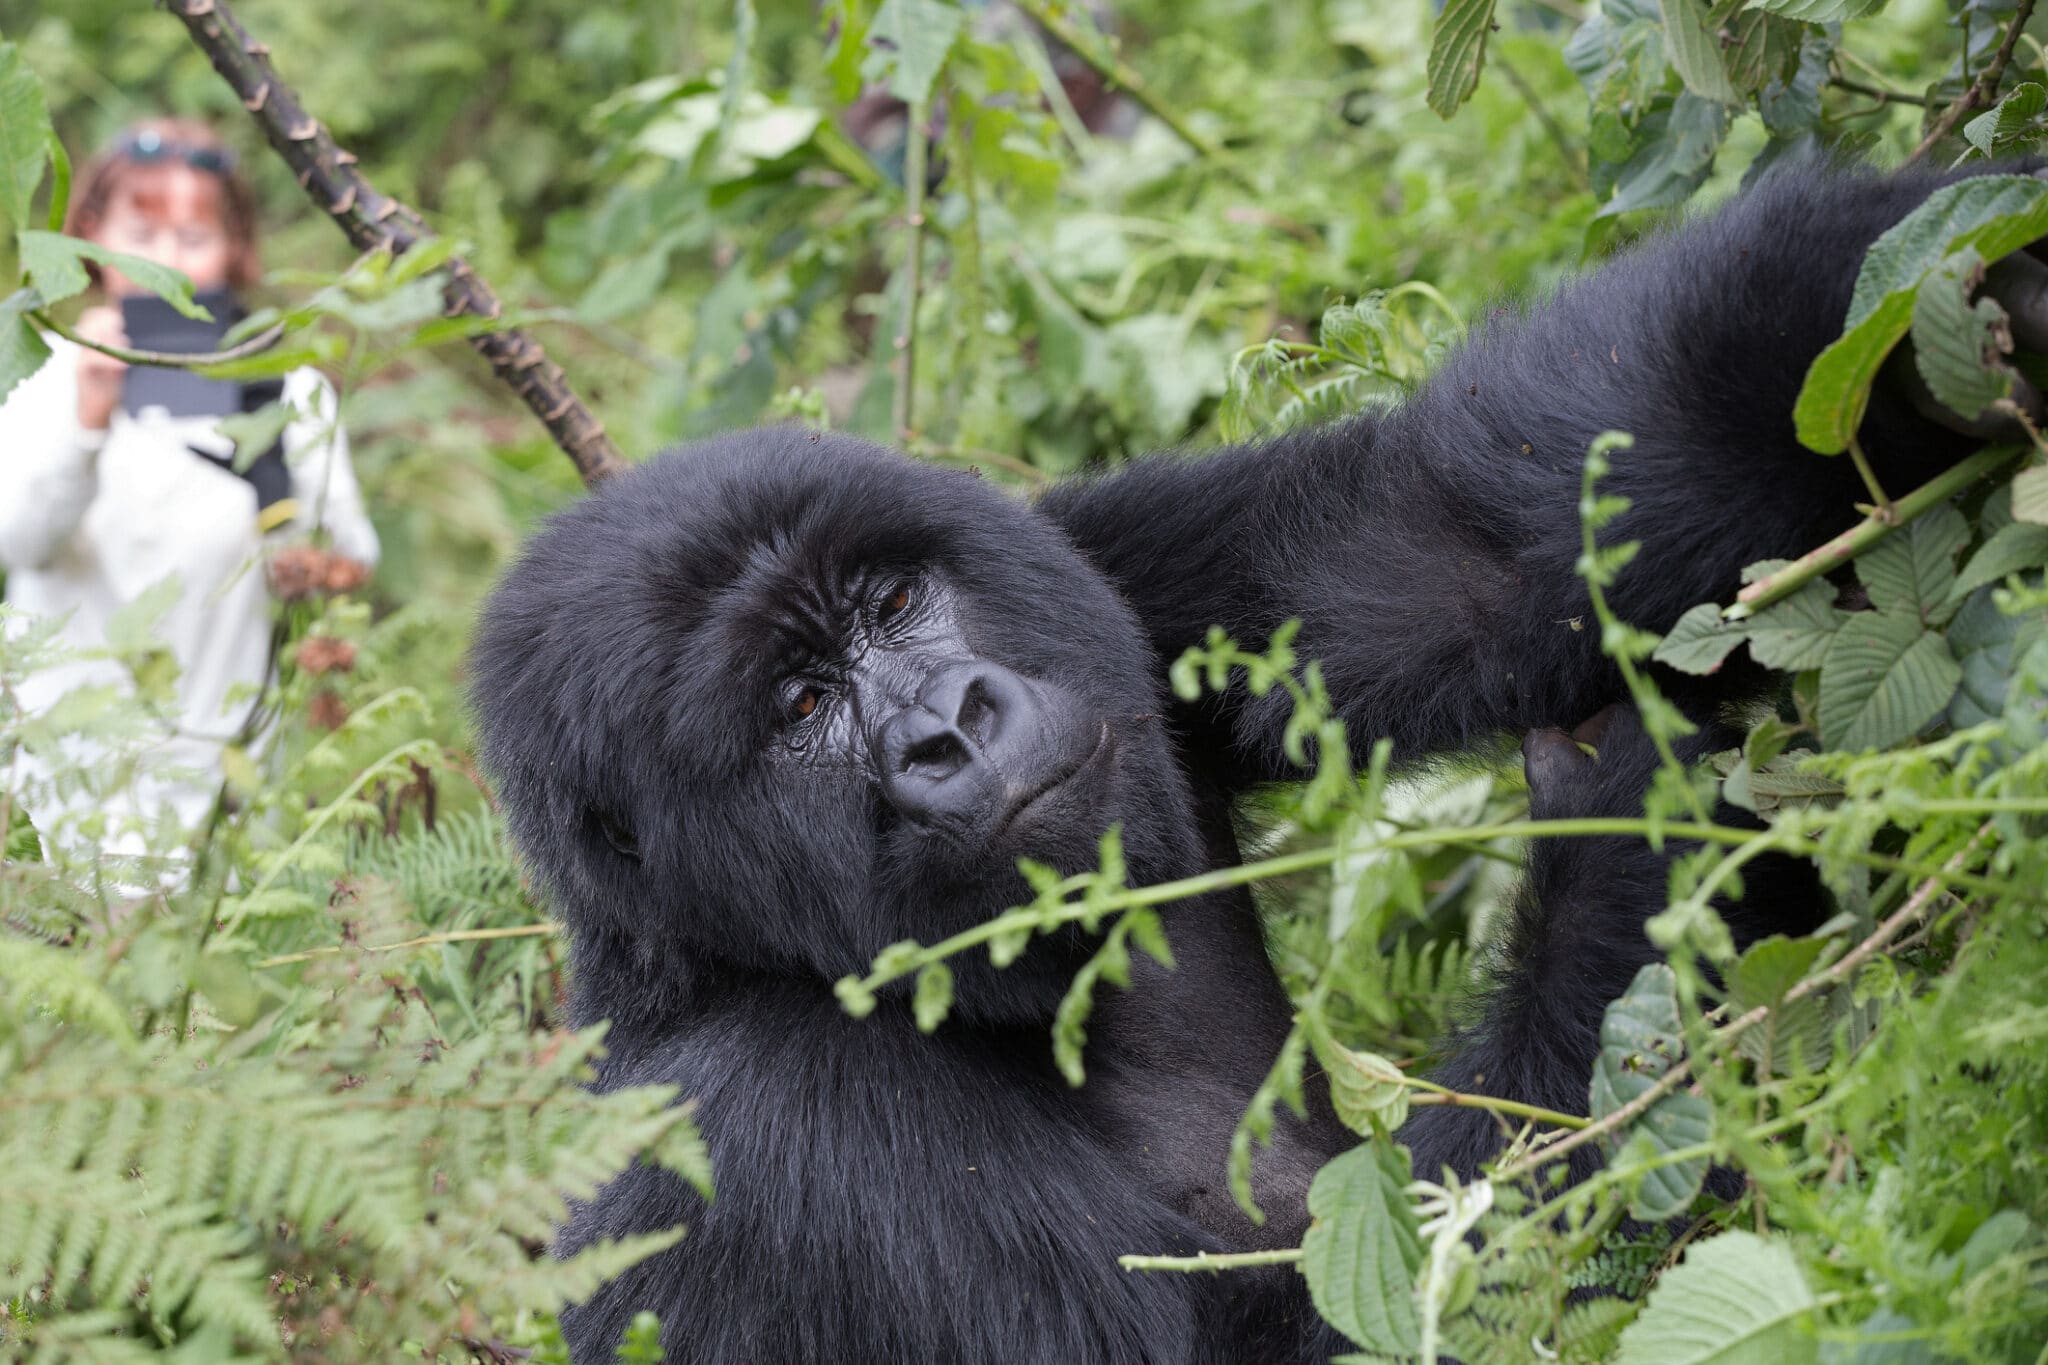 How to Plan a Gorilla Trekking Safari in Rwanda